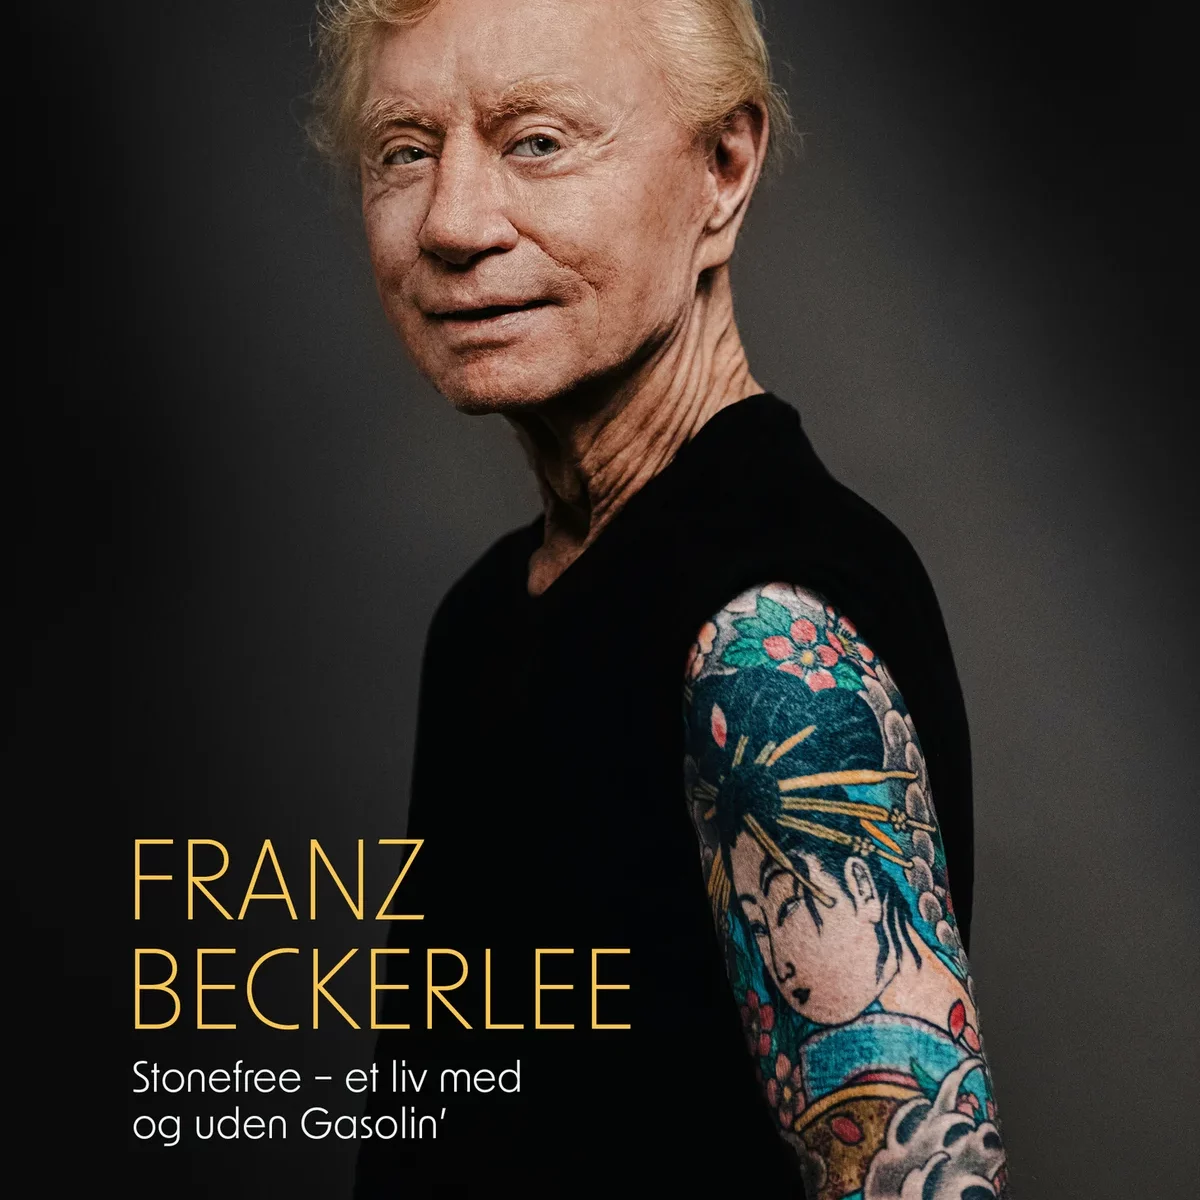 Franz Beckerlee - ’Rockgiganter og Mikrobryg’ i Roskilde